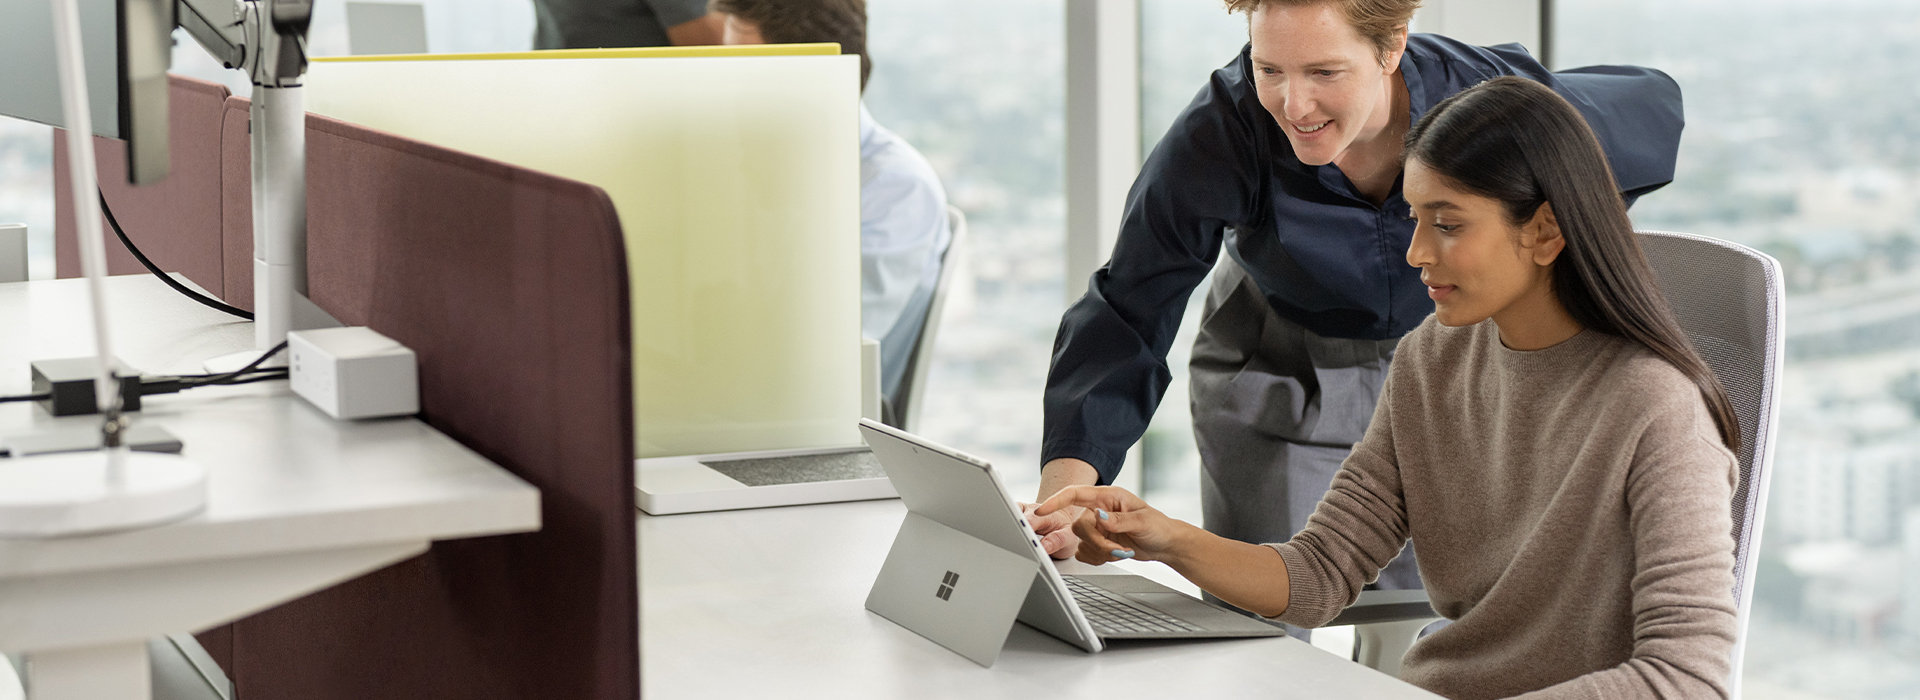 Een persoon kijkt mee over de schouder van iemand die aan een bureau zit en op het scherm van een Surface-apparaat bezig is